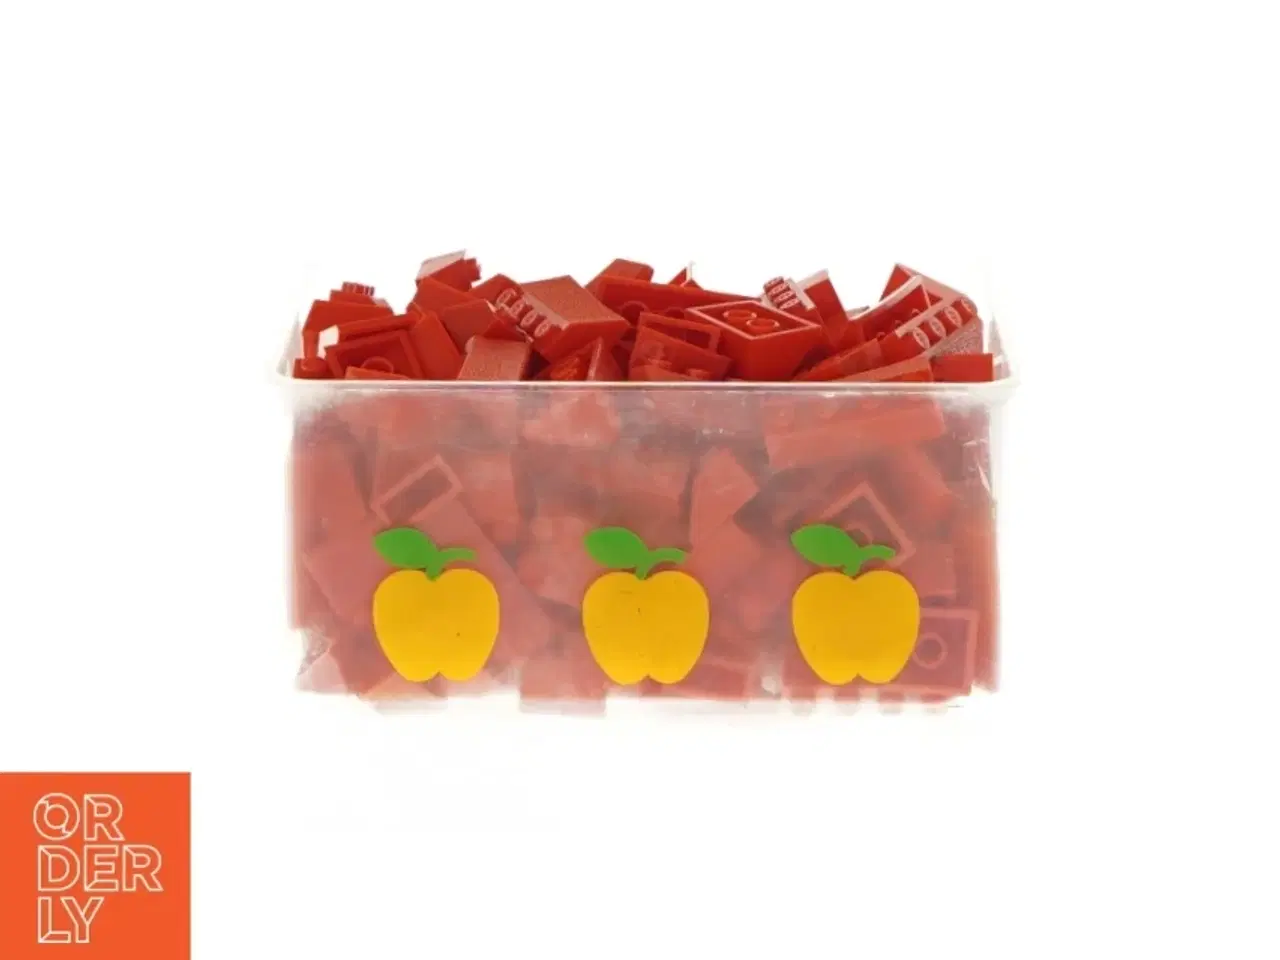 Billede 2 - Æske med røde Lego klodser